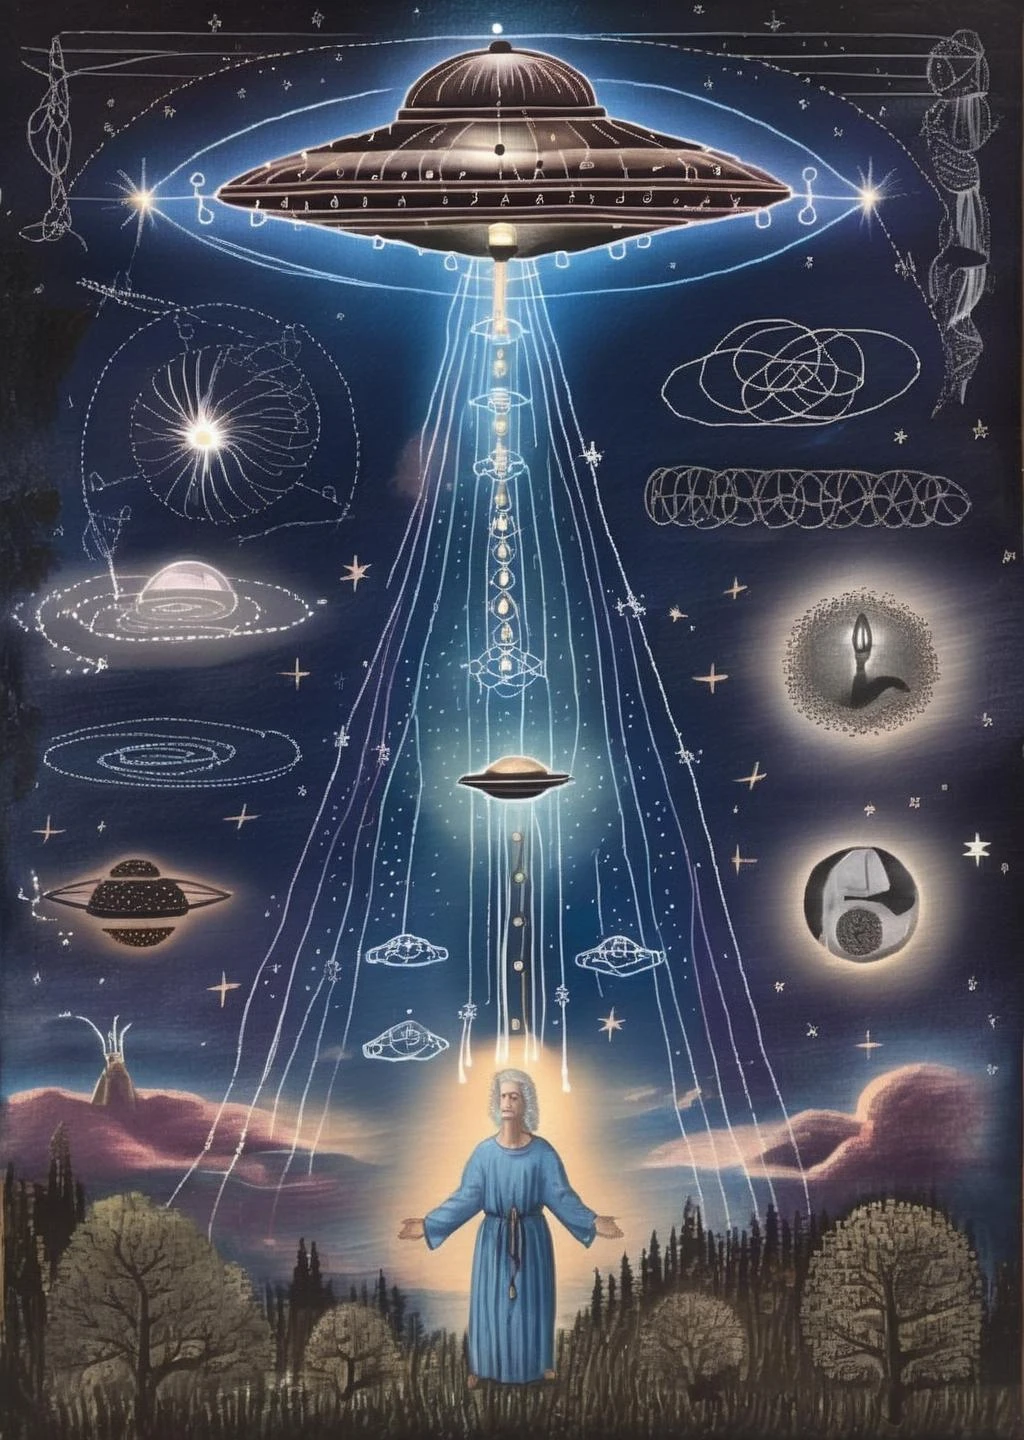 Luz Estelar Arcana: OVNIs emitem raios etéreos que inscrevem revelações cósmicas no céu noturno, entrelaçando misticismo com brilho estelar.